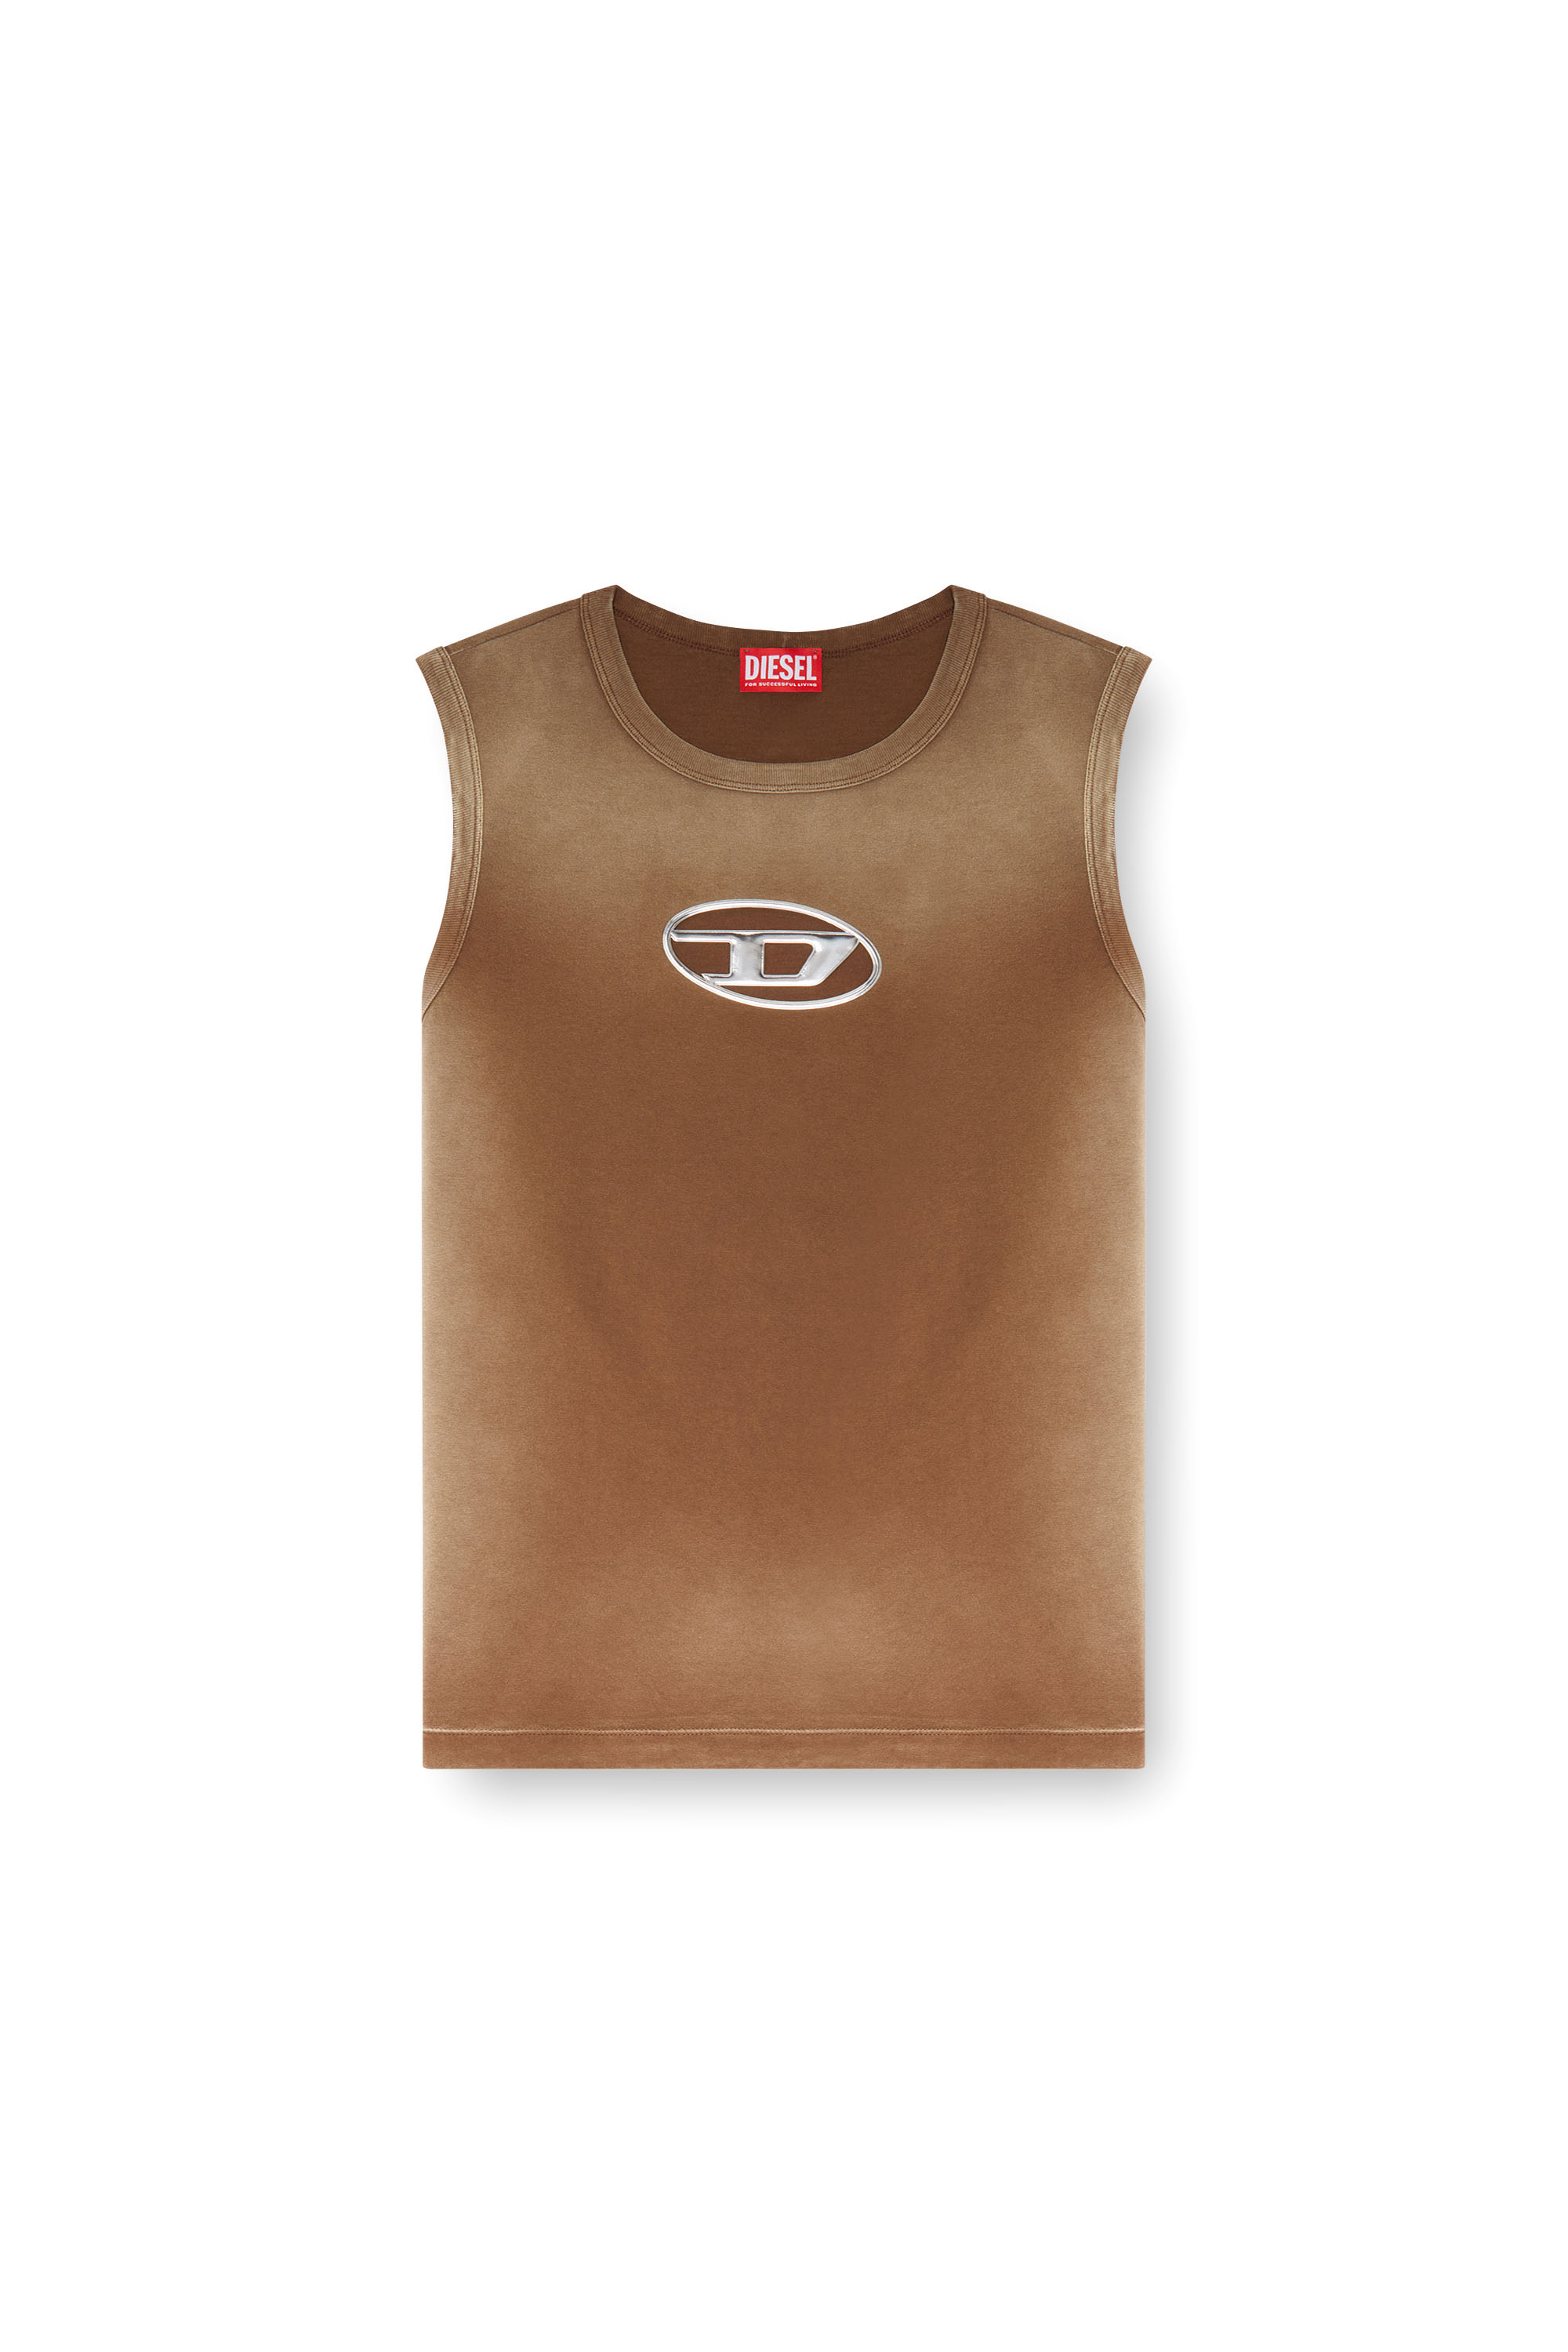 Diesel - T-BRICO, Hombre Camiseta sin mangas desteñida con Oval D en relieve in Marrón - Image 3